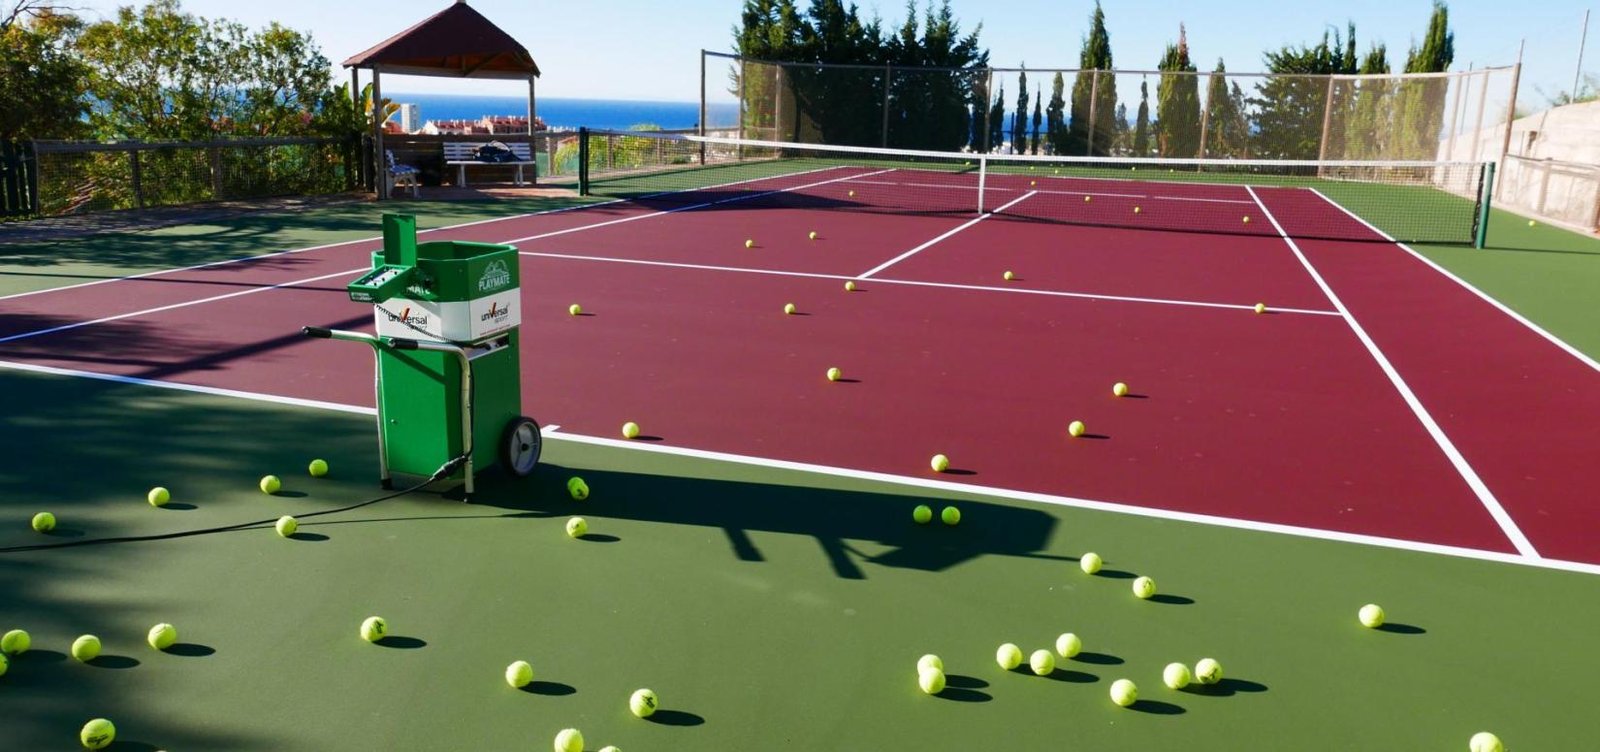 Private tennis court installation